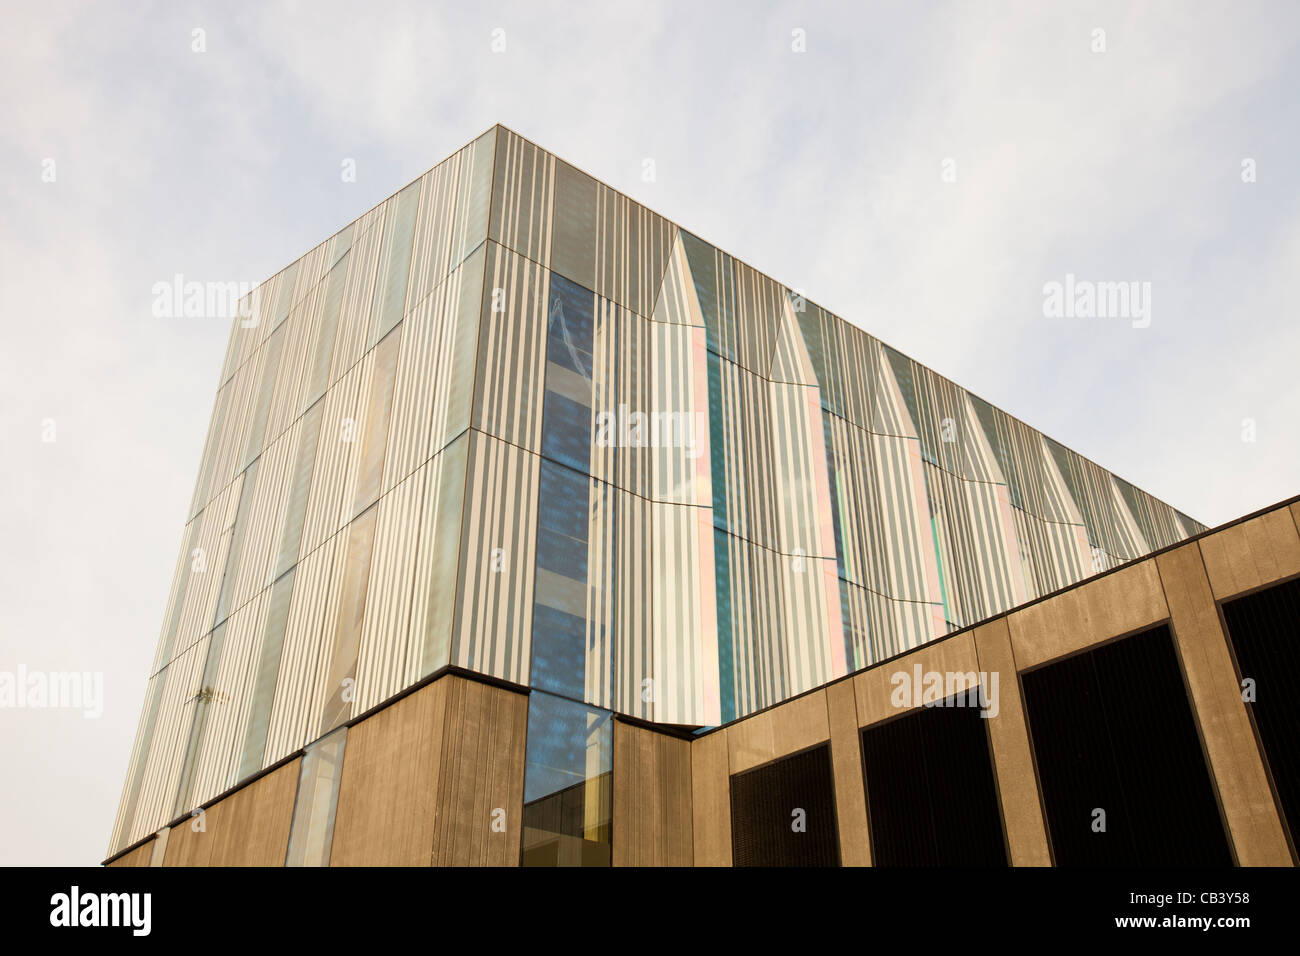 Le nouveau centre des affaires de bâtiment à MMU, Manchester Metropolitan University, intègre de nombreuses caractéristiques écologiques, y compris les énergies renouvelables e Banque D'Images